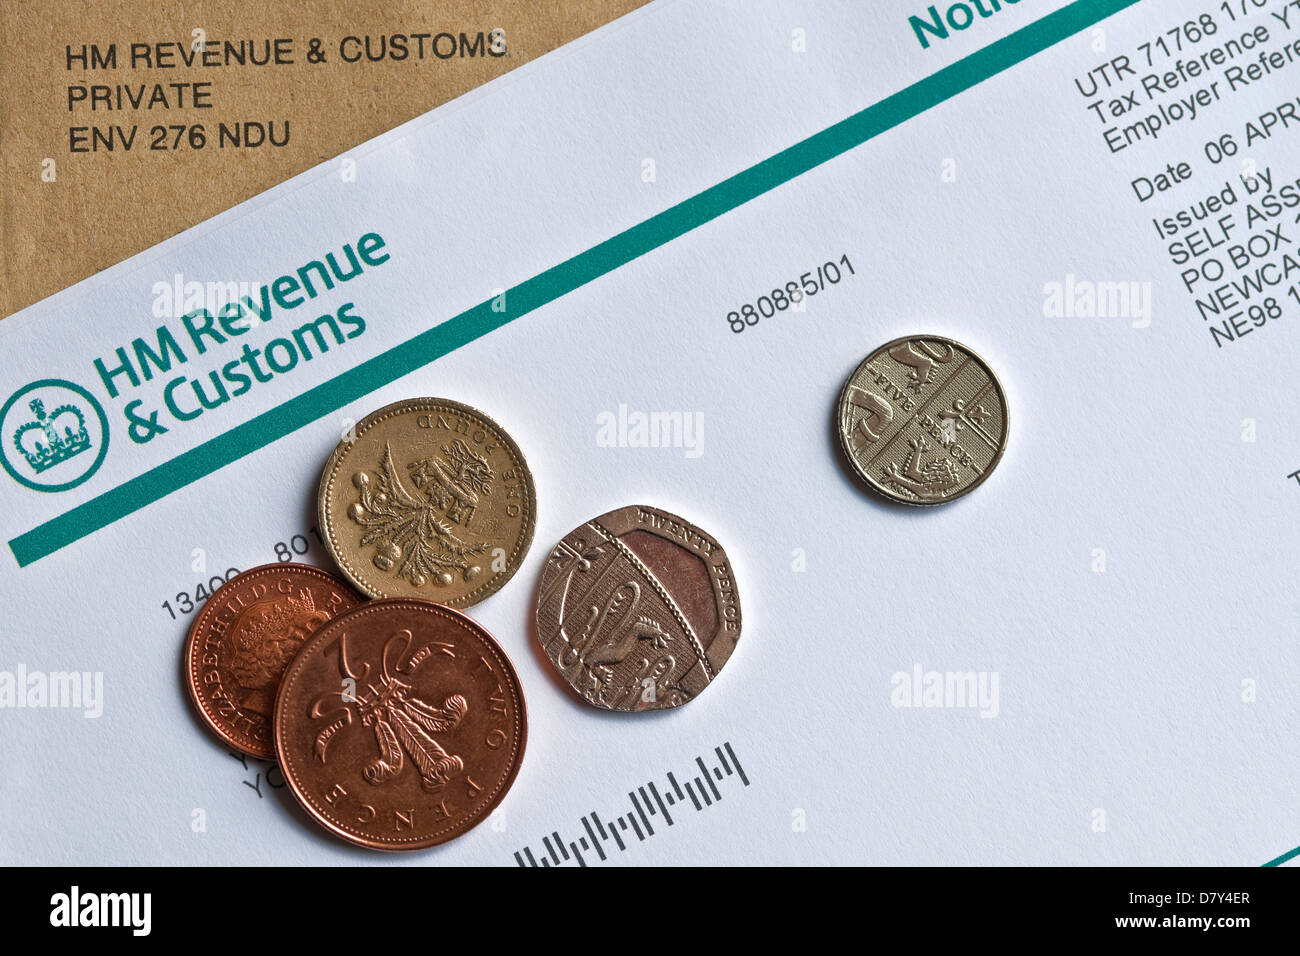 Gros plan de l'auto-évaluation des revenus et des douanes de HMRC HM Formulaire d'avis pour remplir une déclaration de revenus Angleterre Royaume-Uni Royaume GB Grande-Bretagne Banque D'Images